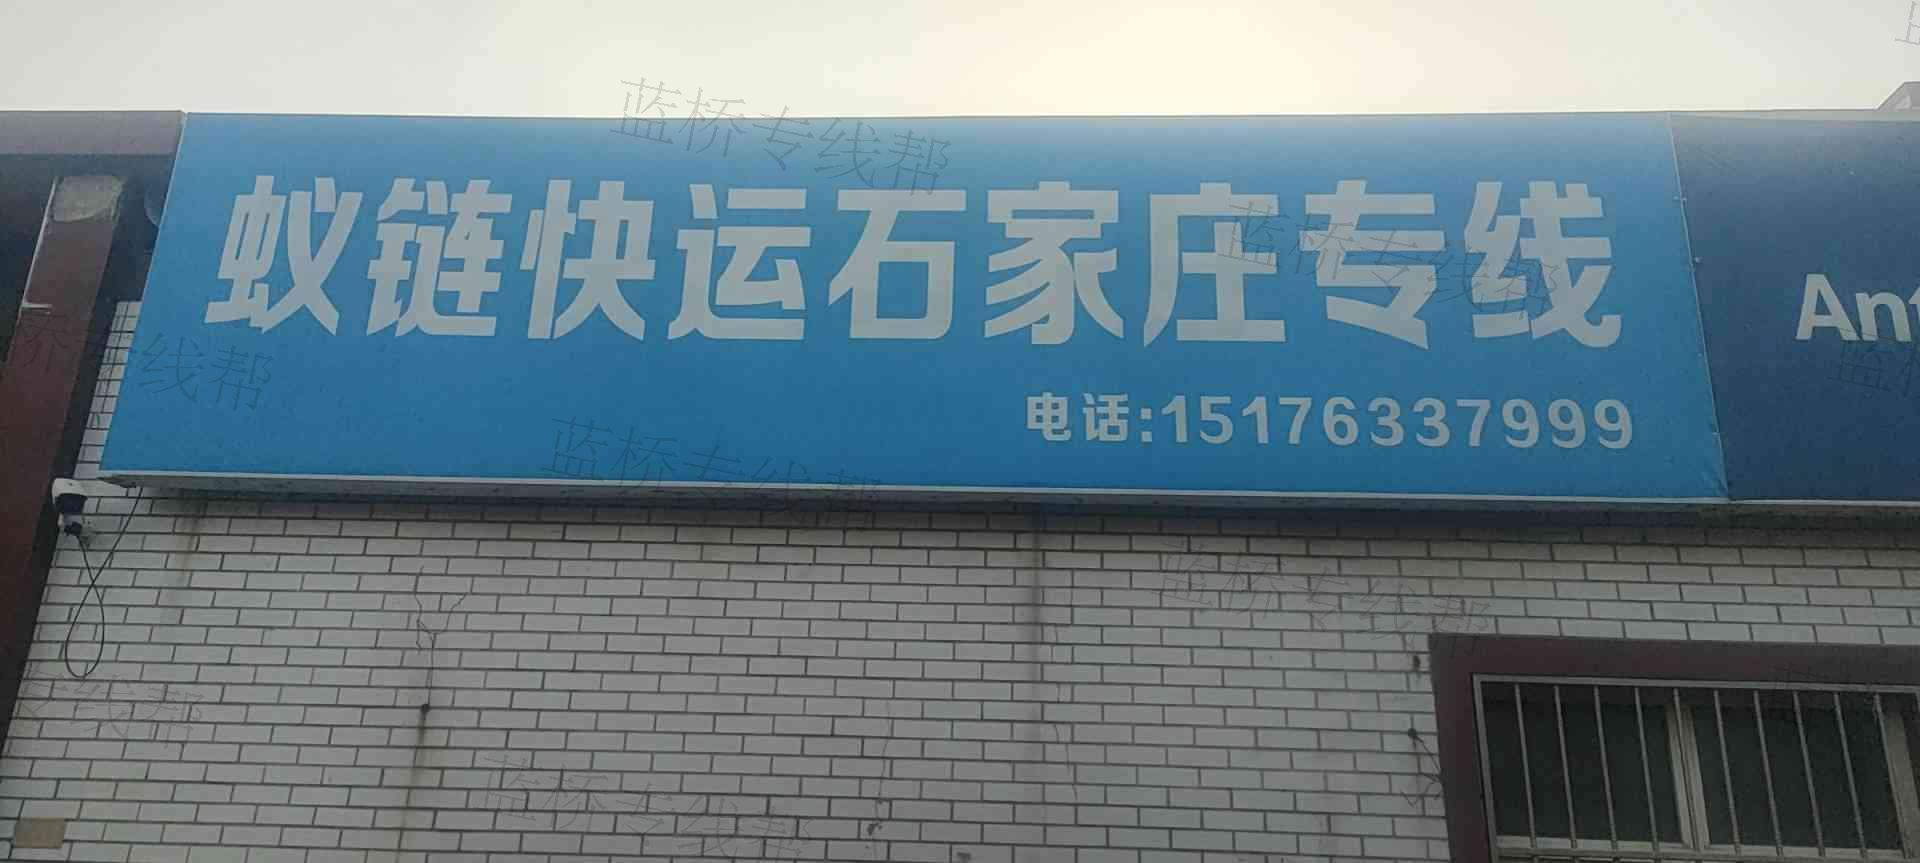 高阳县蚁链普通货物运输服务部